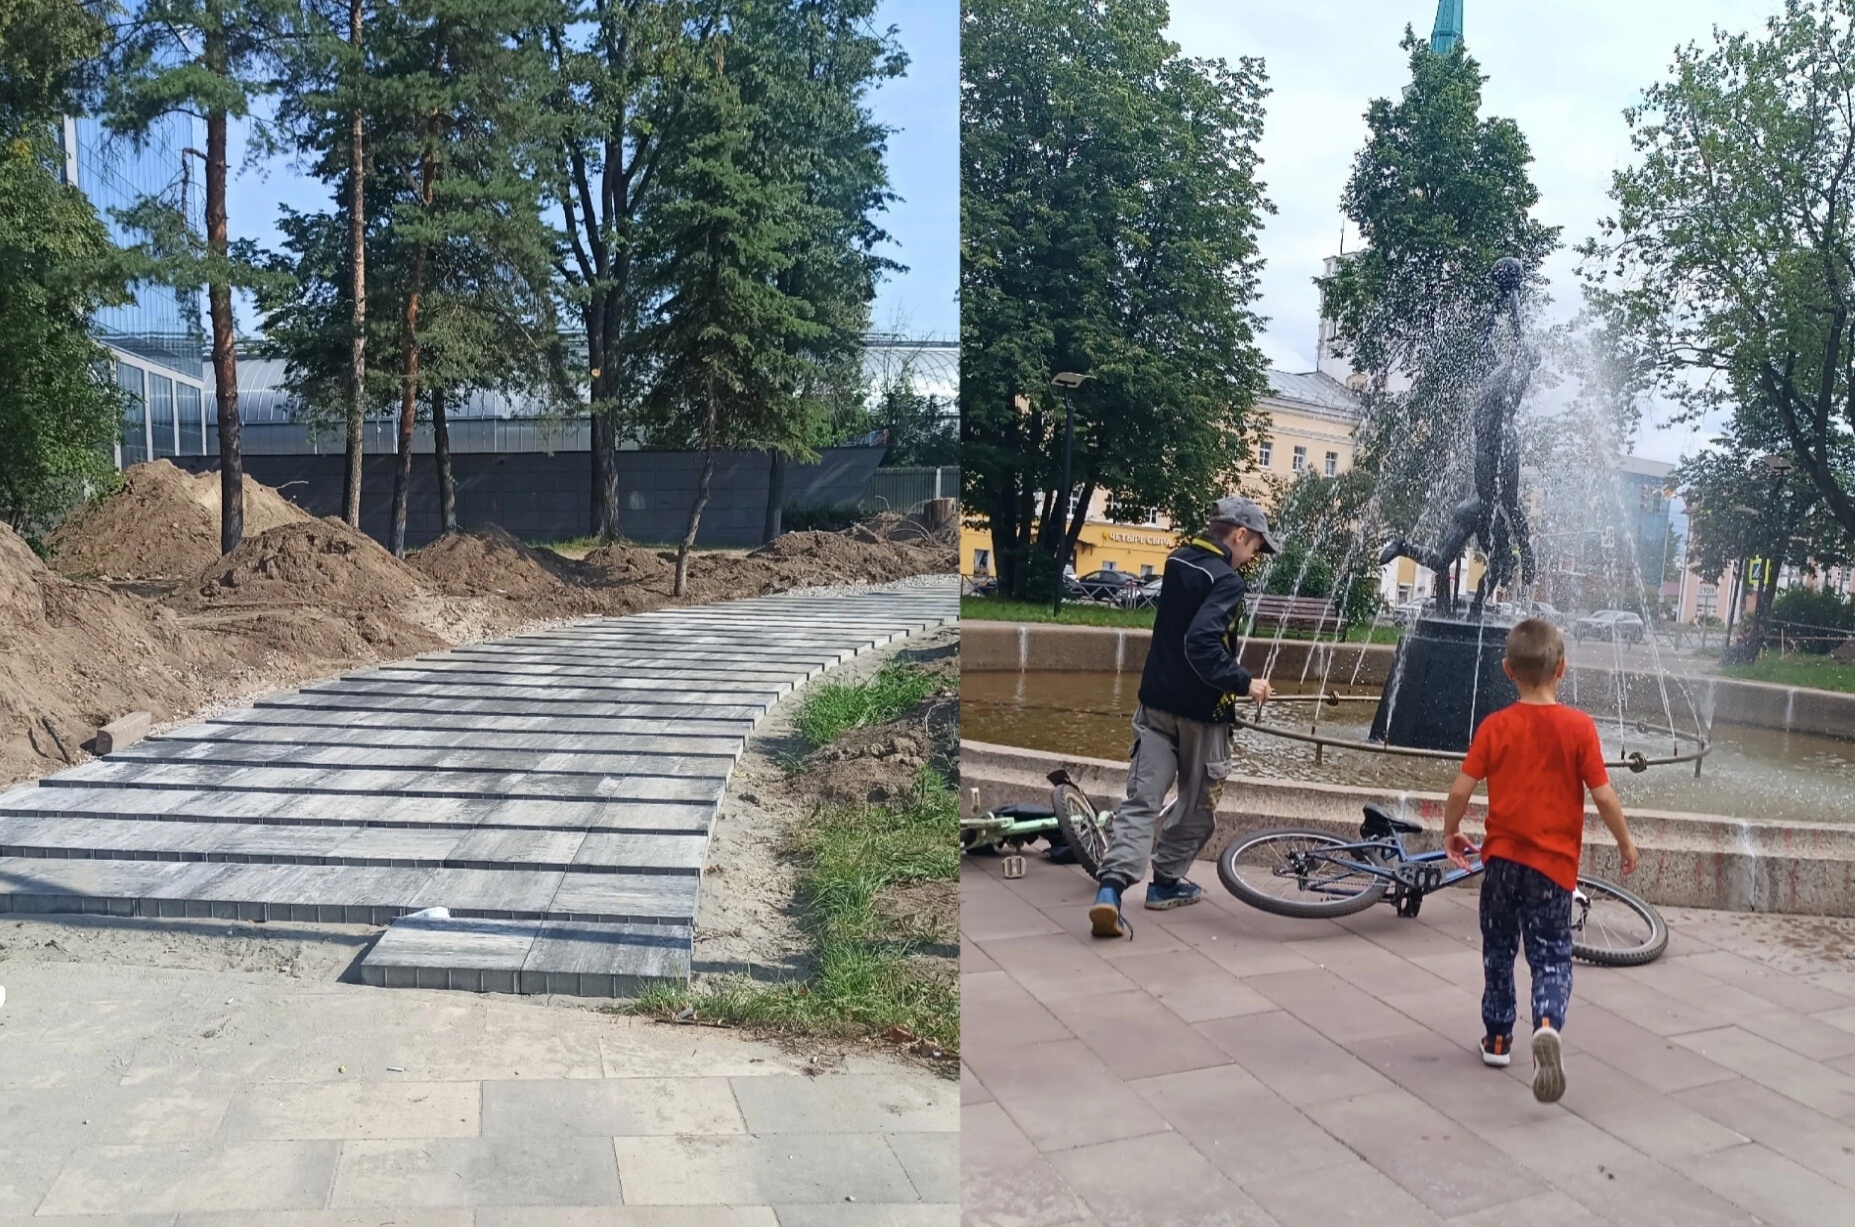  Ярославцы в ужасе от ремонта сквера, который делают по нацпроекту Путина